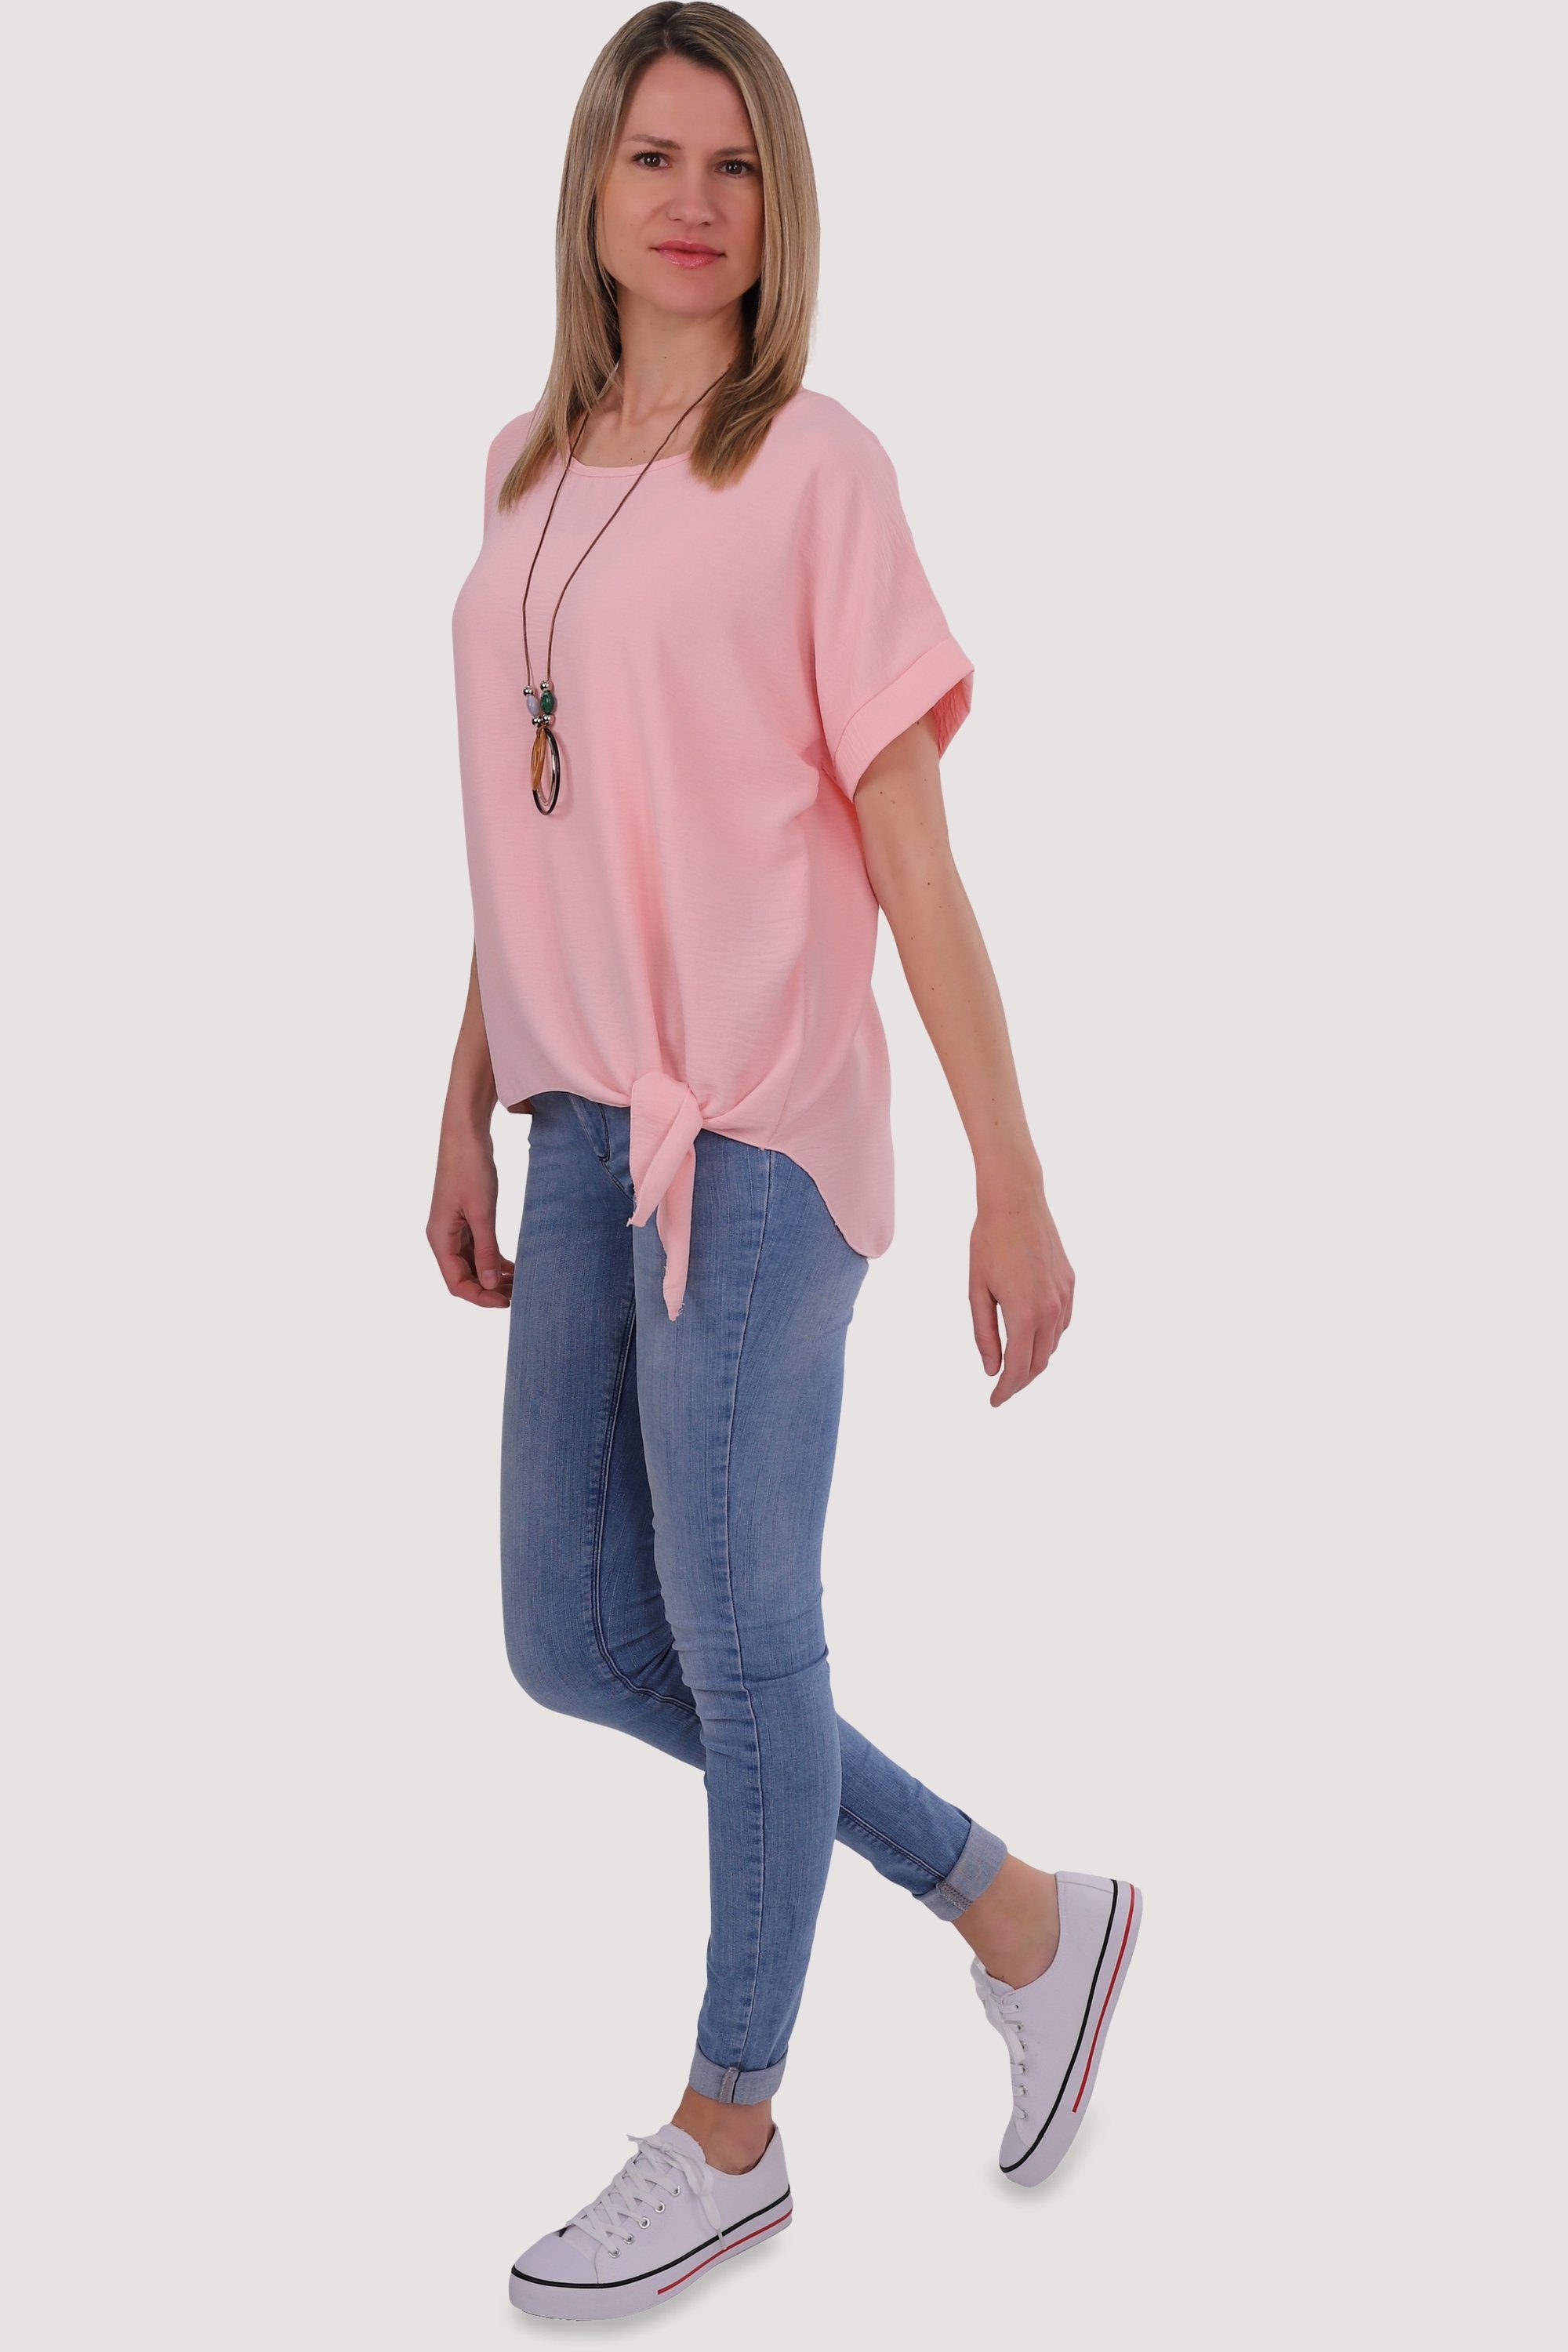 fashion malito Bindeknoten und rosa Blusenshirt 10508 Einheitsgröße mit than Kette more